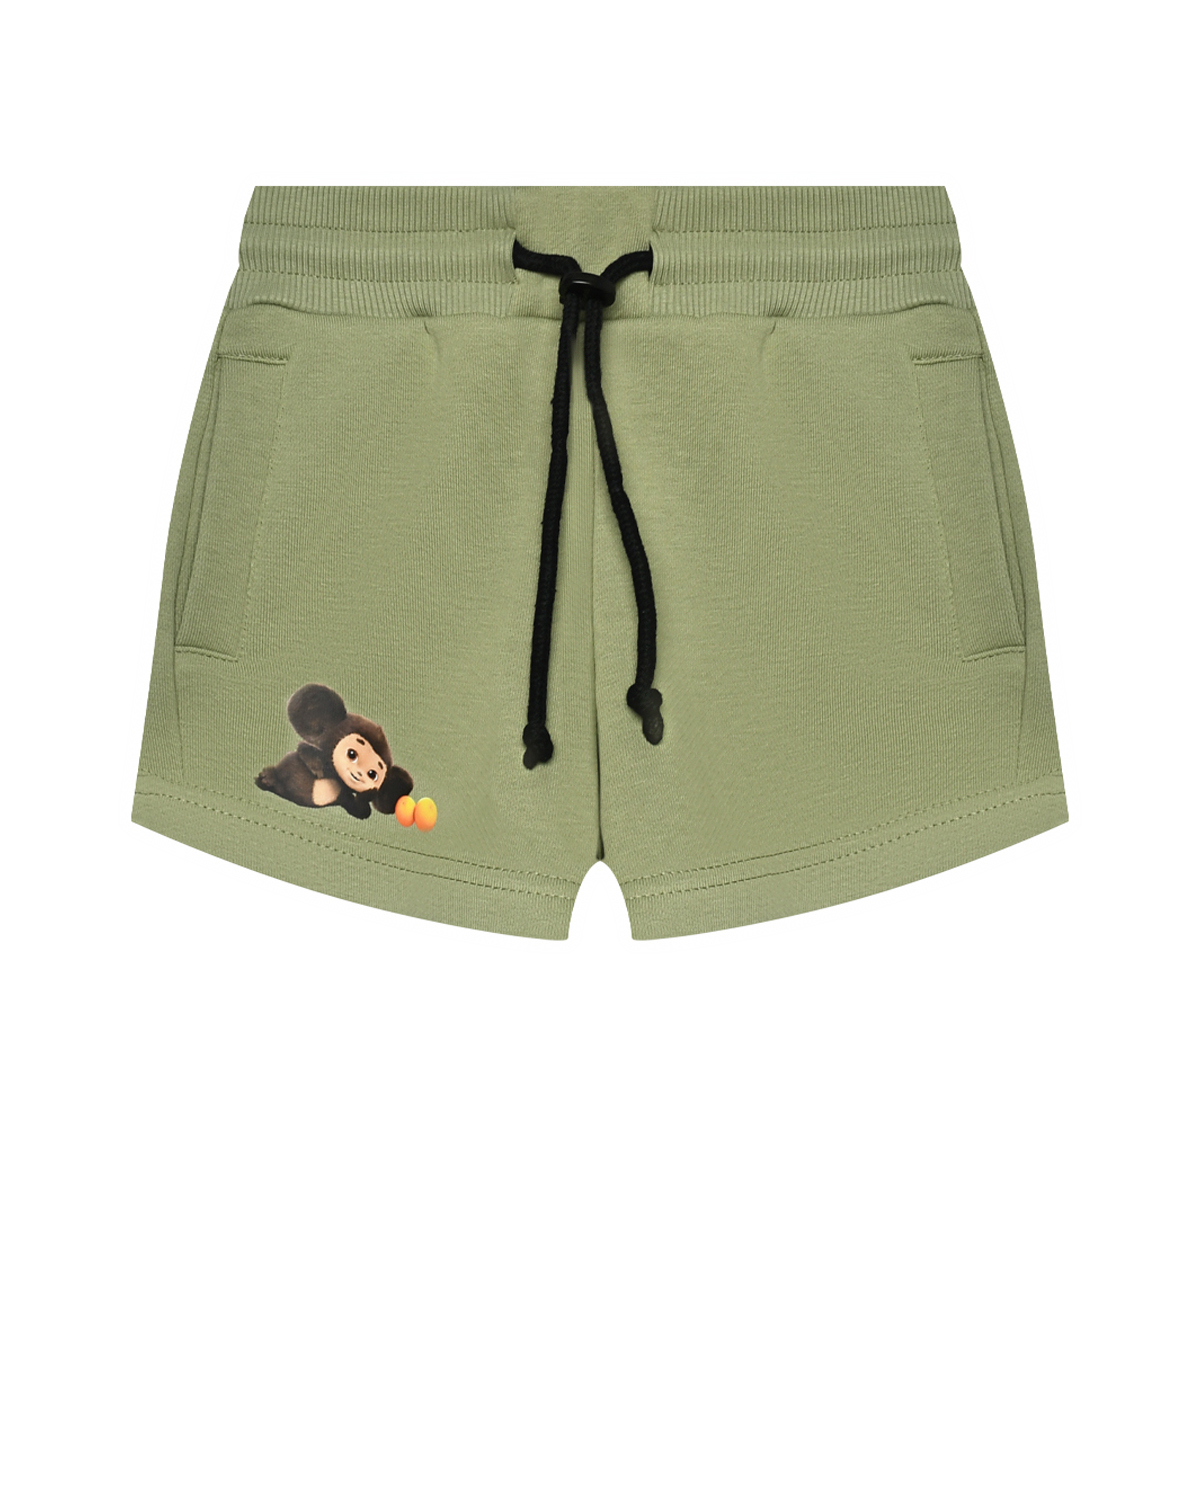 Шорты на резинке с Чебурашкой на штанине, зеленые Dan Maralex детские, размер 92, цвет нет цвета